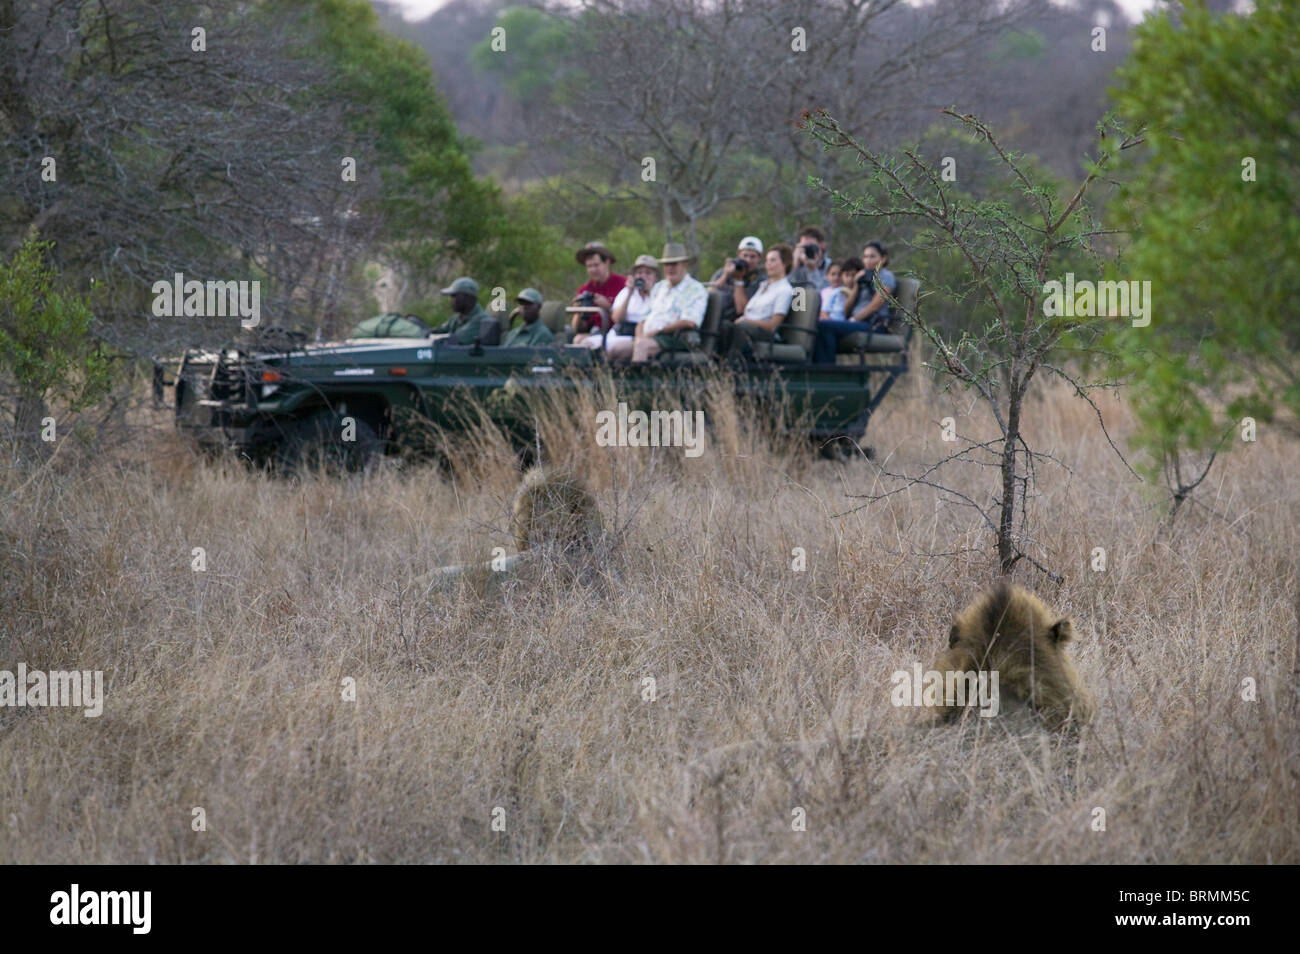 Les touristes dans un jeu ouvert conduire le véhicule visualiser deux lions mâles Banque D'Images